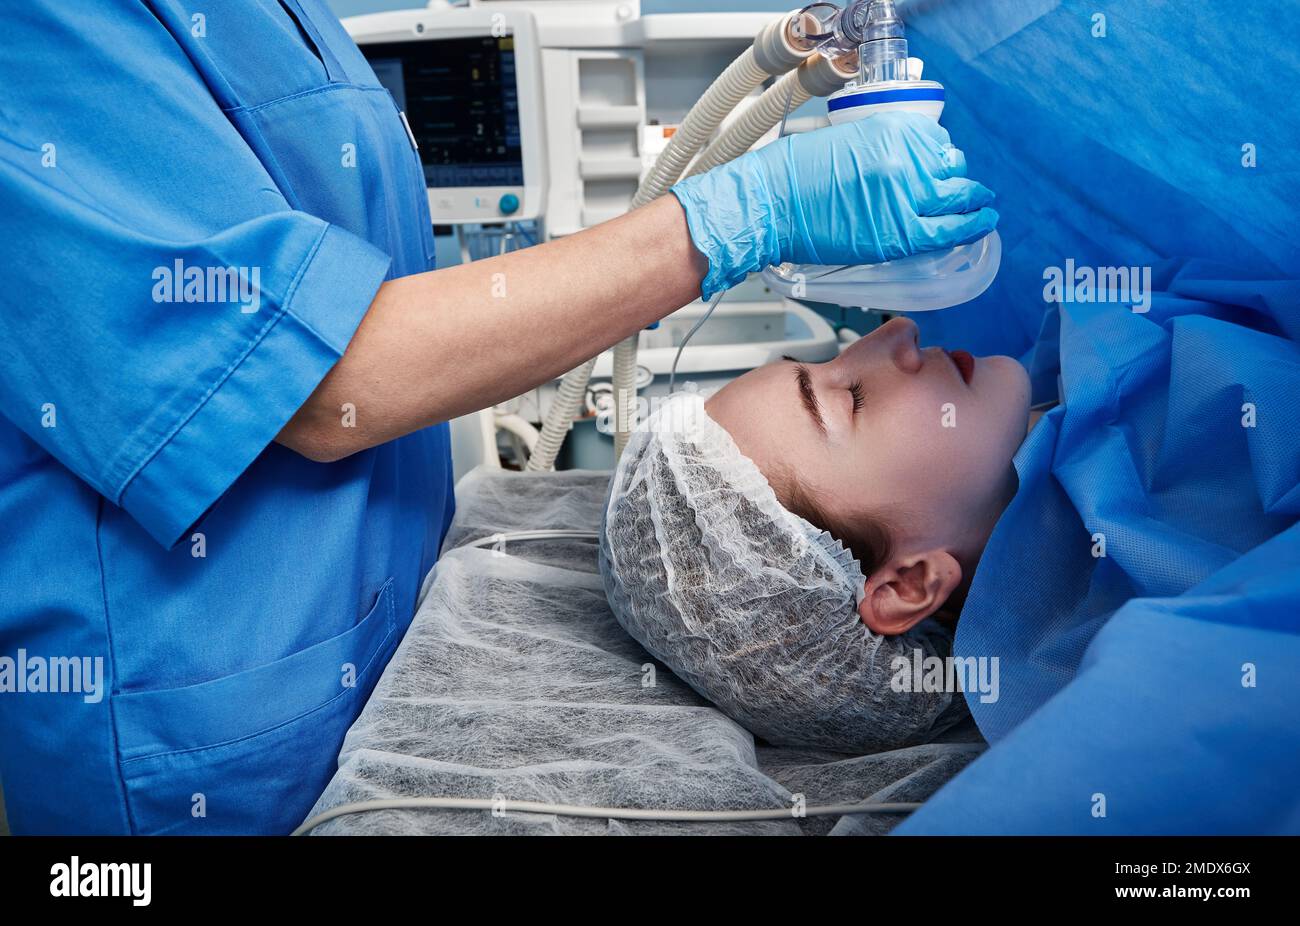 Patiente sédatée par un anesthésiste avant l'intervention chirurgicale. Anesthésie pour la chirurgie Banque D'Images